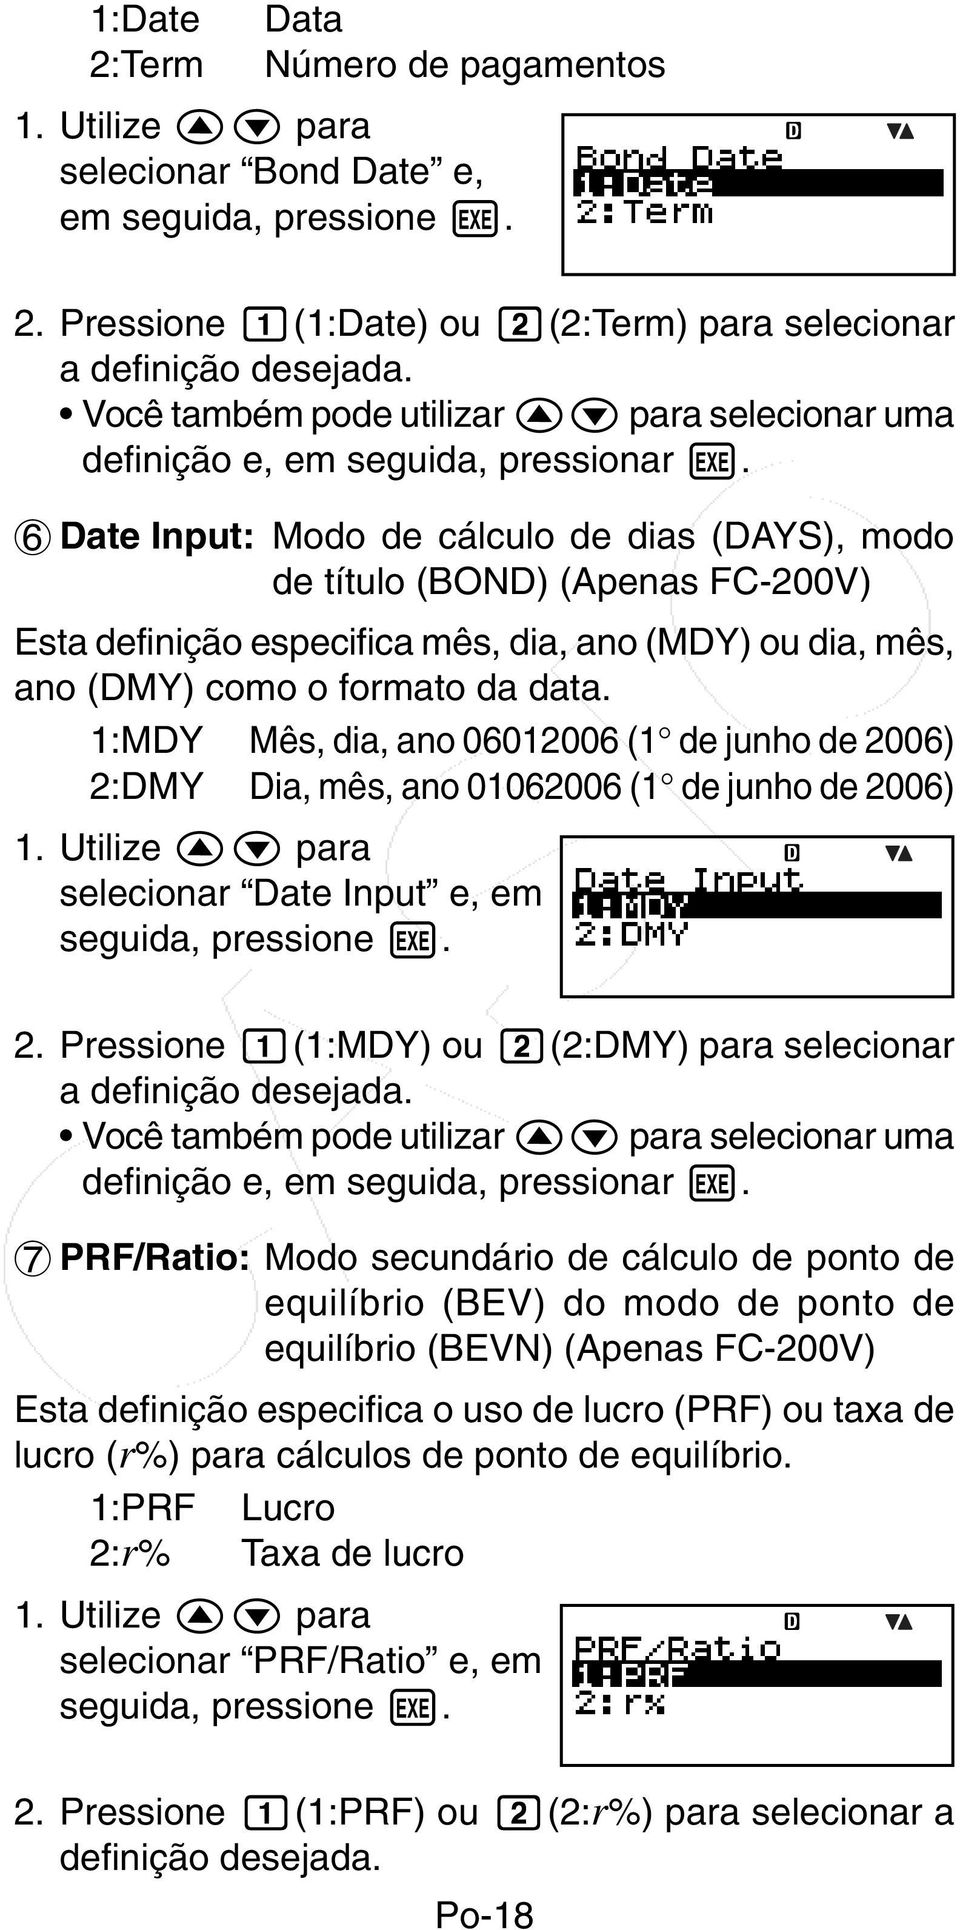 6 Date Input: Modo de cálculo de dias (DAYS), modo de título (BOND) (Apenas FC-200V) Esta definição especifica mês, dia, ano (MDY) ou dia, mês, ano (DMY) como o formato da data.